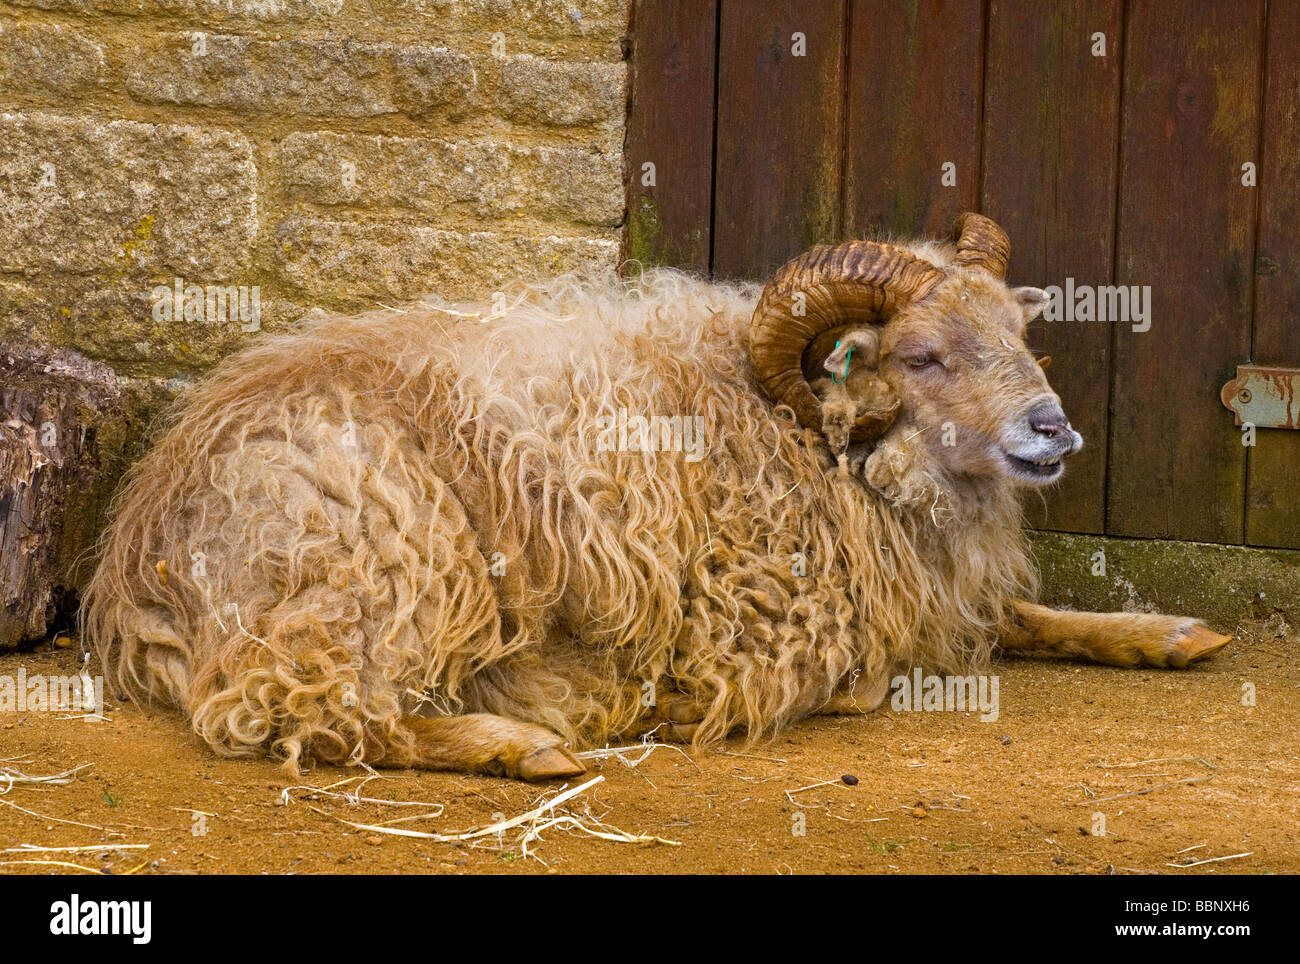 L'Ouessant (ou Ouessant) est une race de moutons domestiques de l'île d'Ouessant au large de la côte de Bretagne, France Banque D'Images